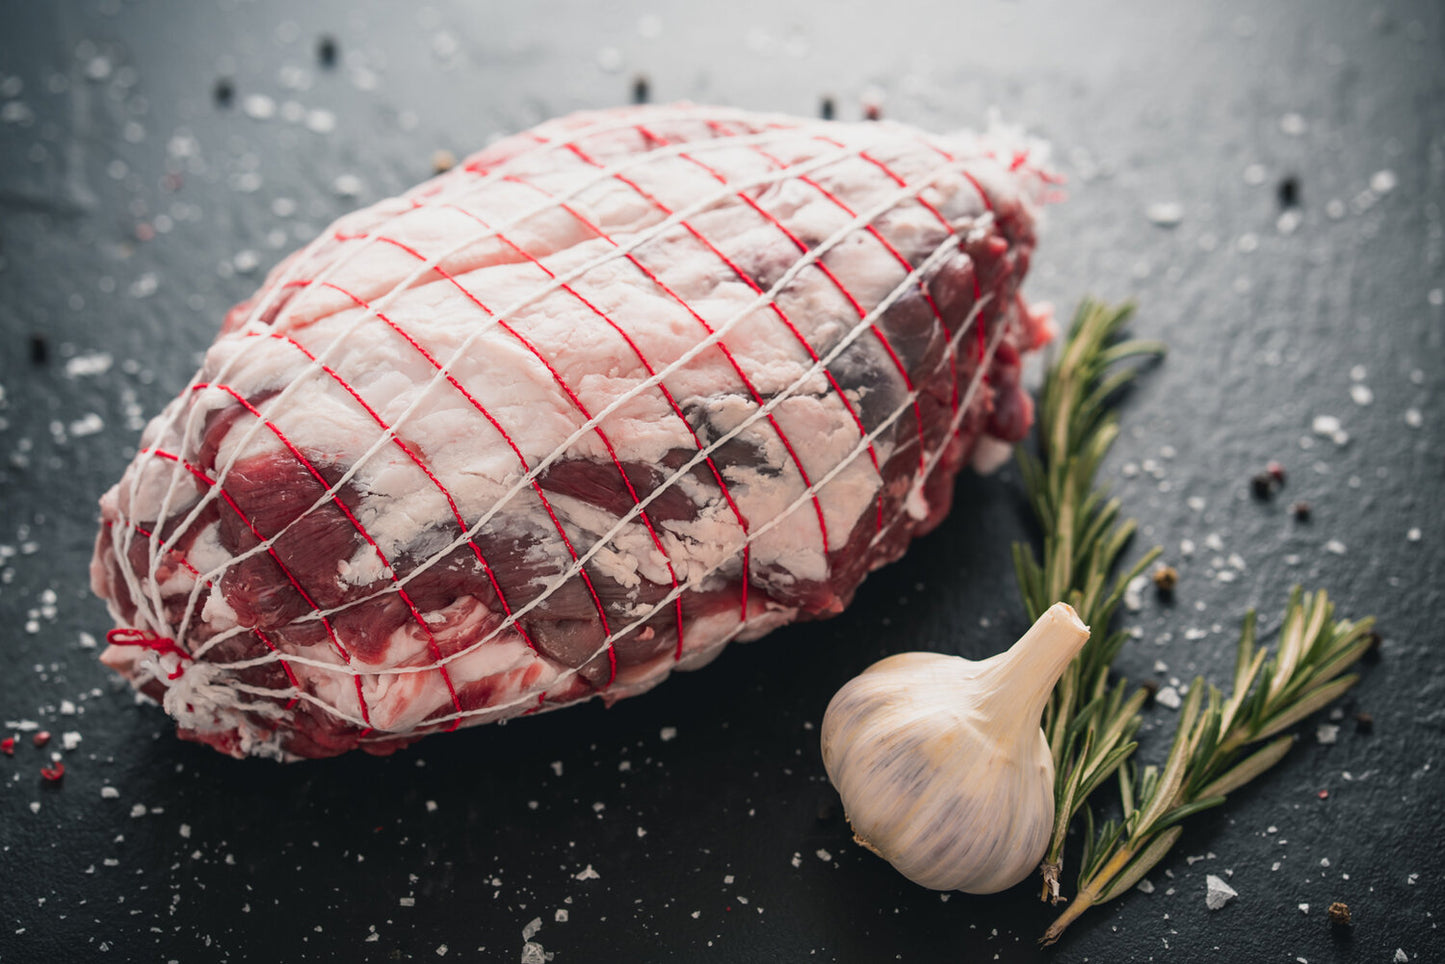 Lamb shoulder roast 6-8lb boneless